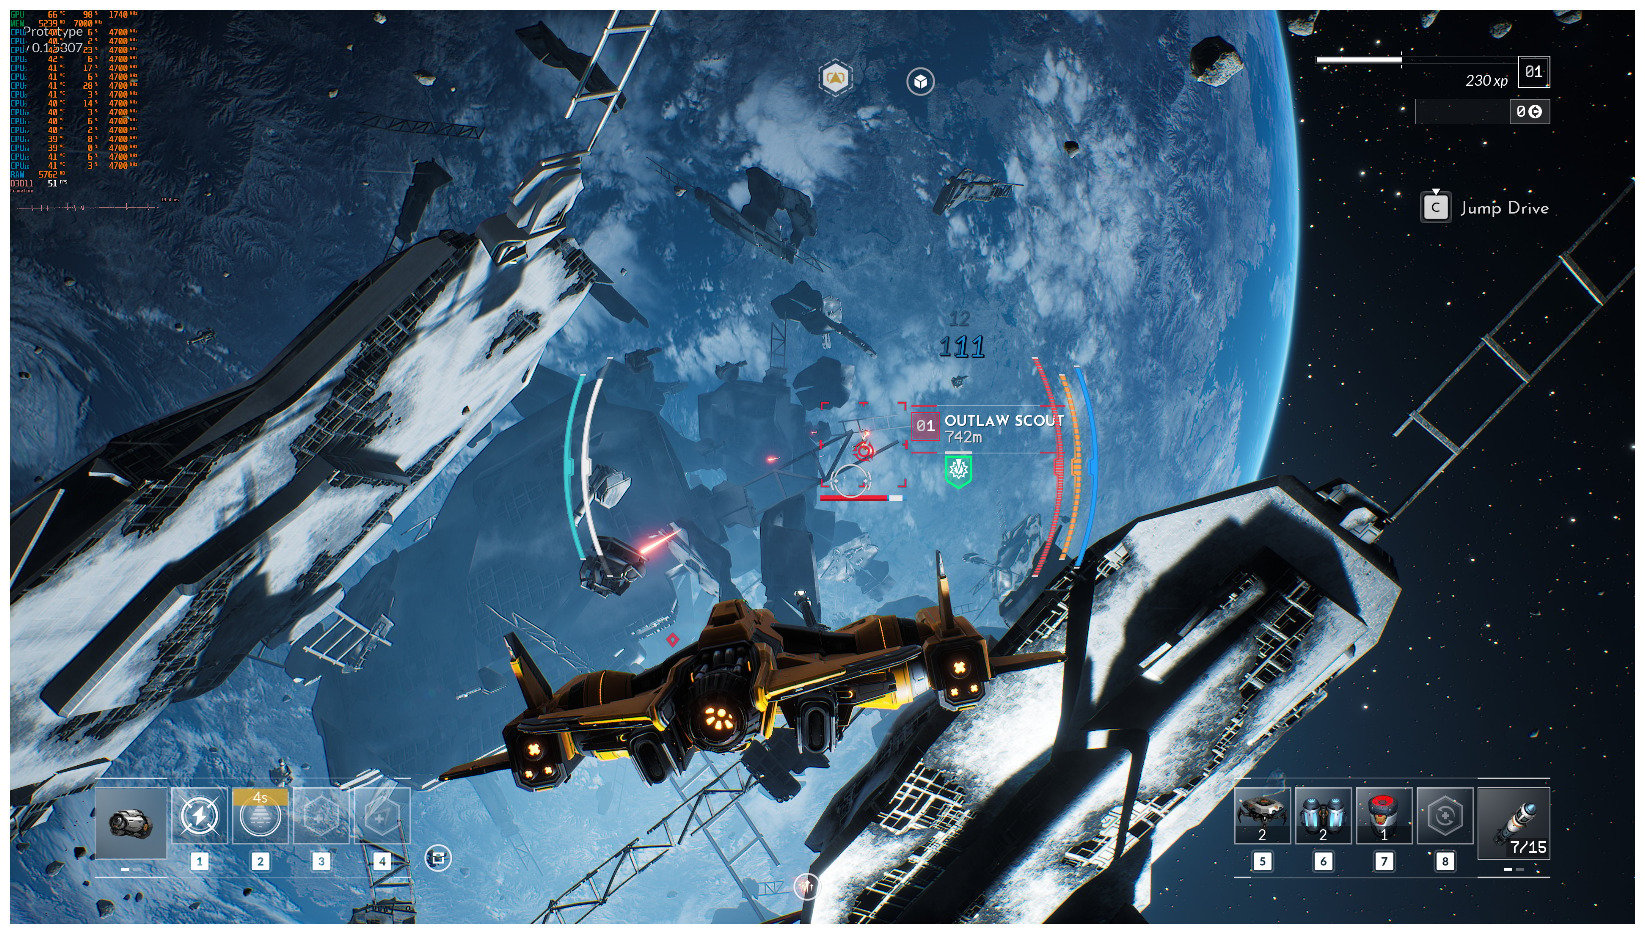 Image 17 : Everspace 2 exhibe des captures en jeu en 4K, et elles sont magnifiques